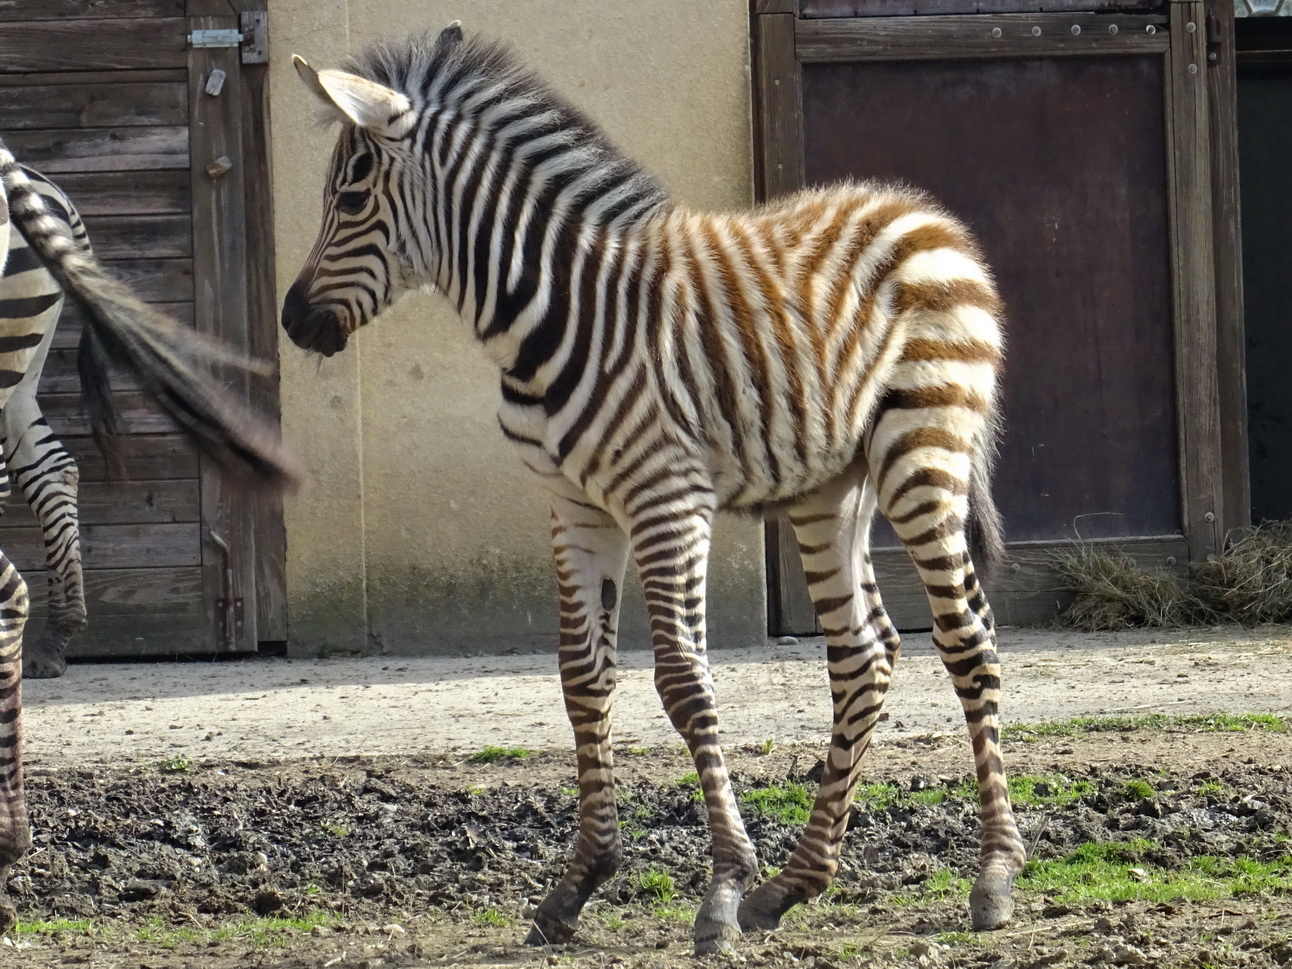 Zagrebački zoološki ima novo mladunče, bebu zebru koja je okoćena jučer.
